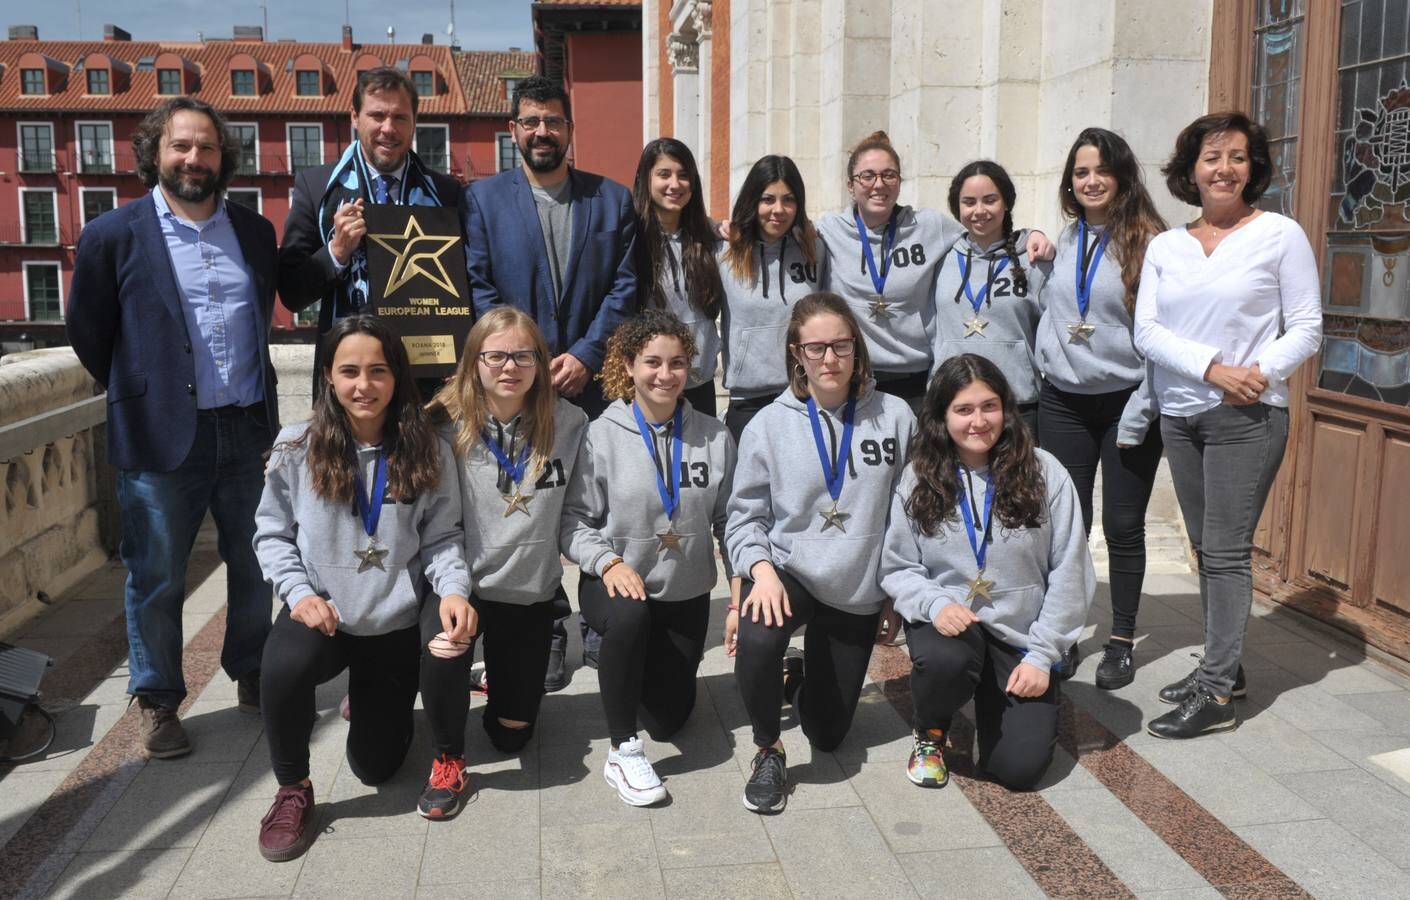 Con nueve jugadoras nacidas en Valladolid, es el primer equipo femenino local que conquista este título europeo